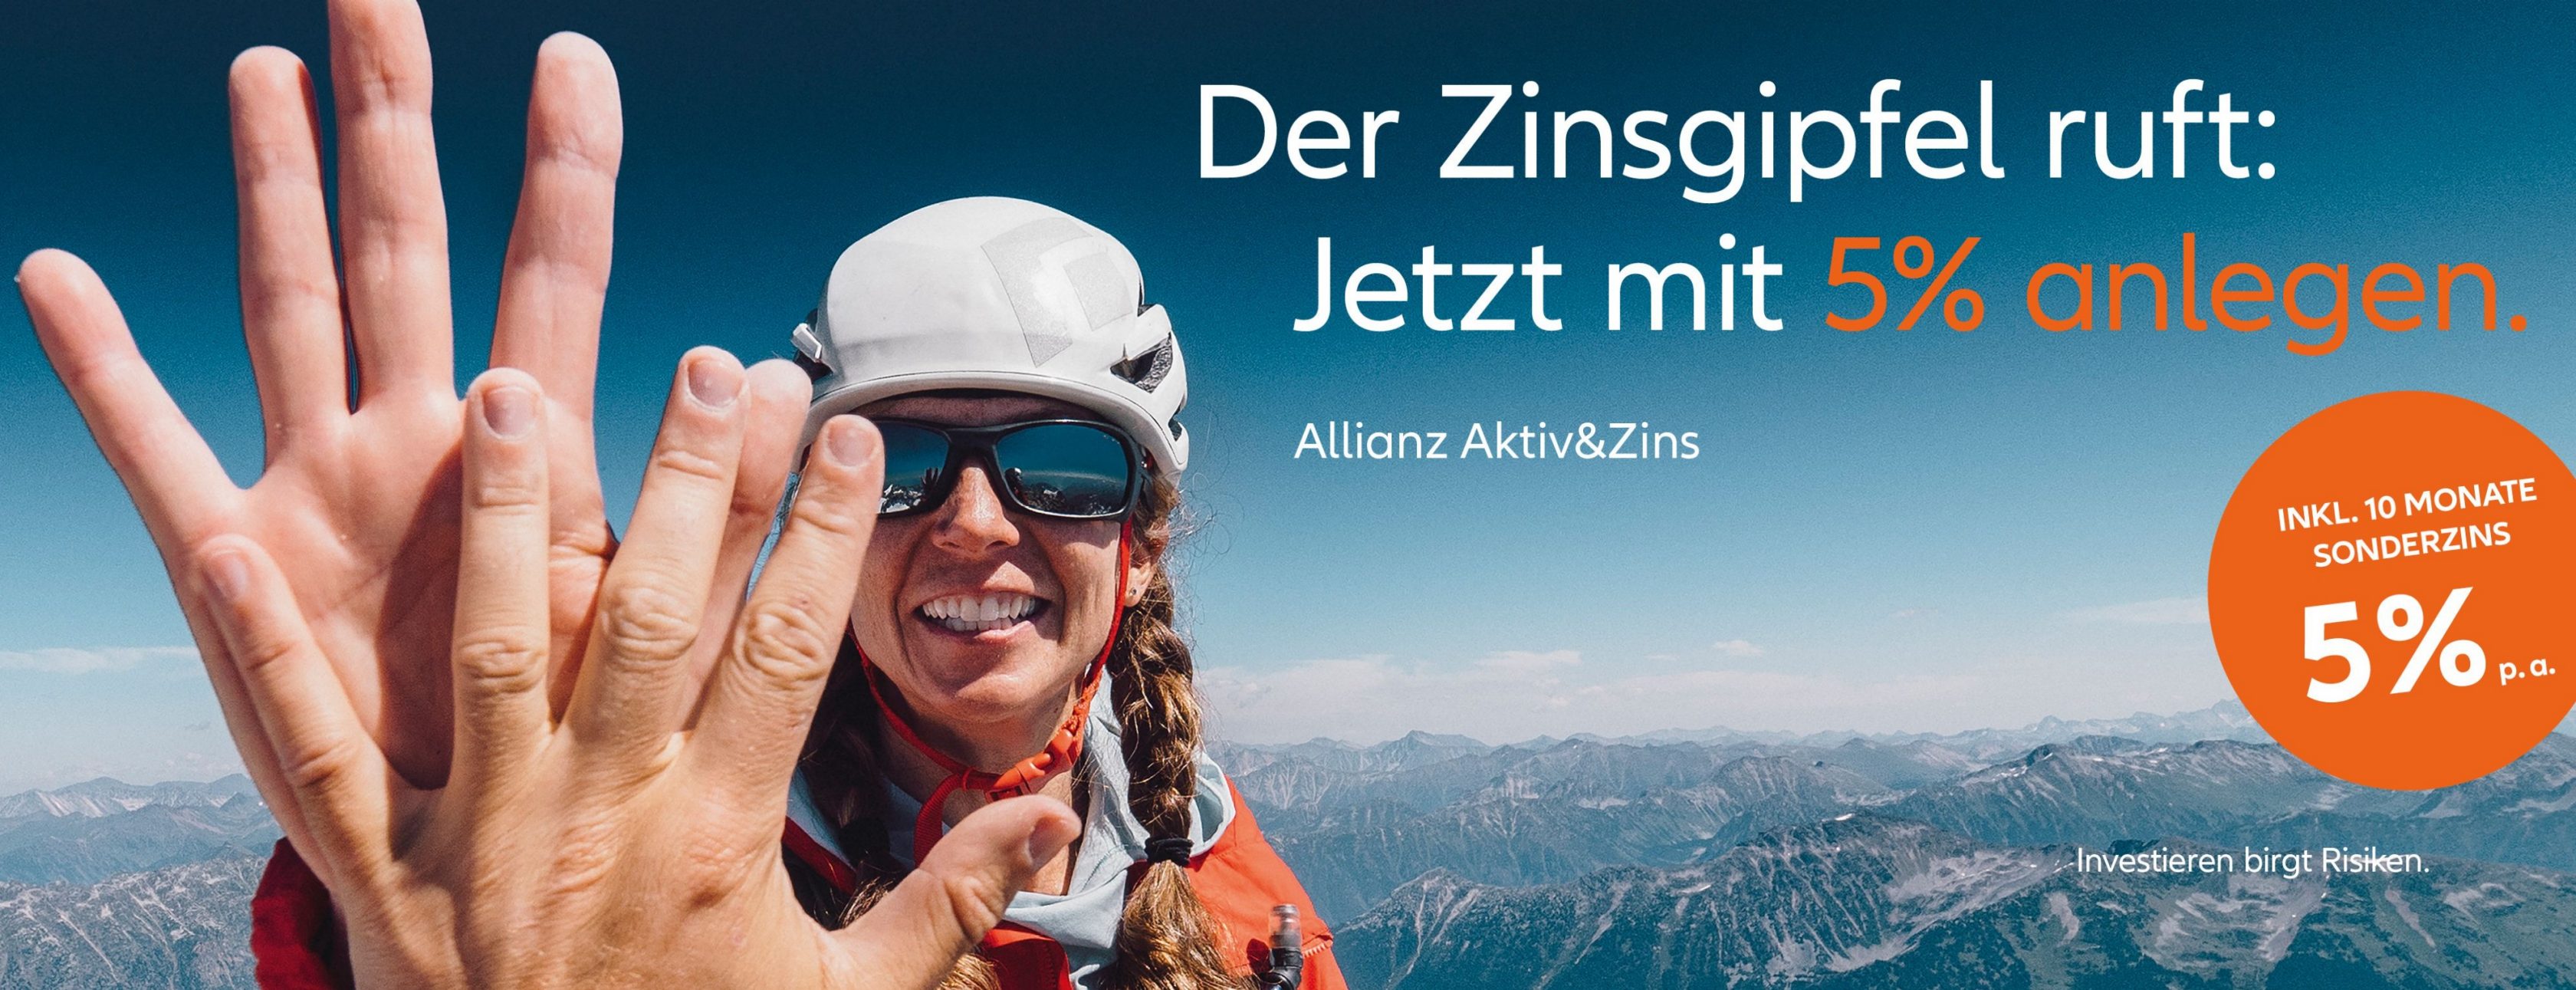 Allianz Versicherung Jana Syring Sandersdorf-Brehna - Allianz High five Zinsgipfel 5% anlegen